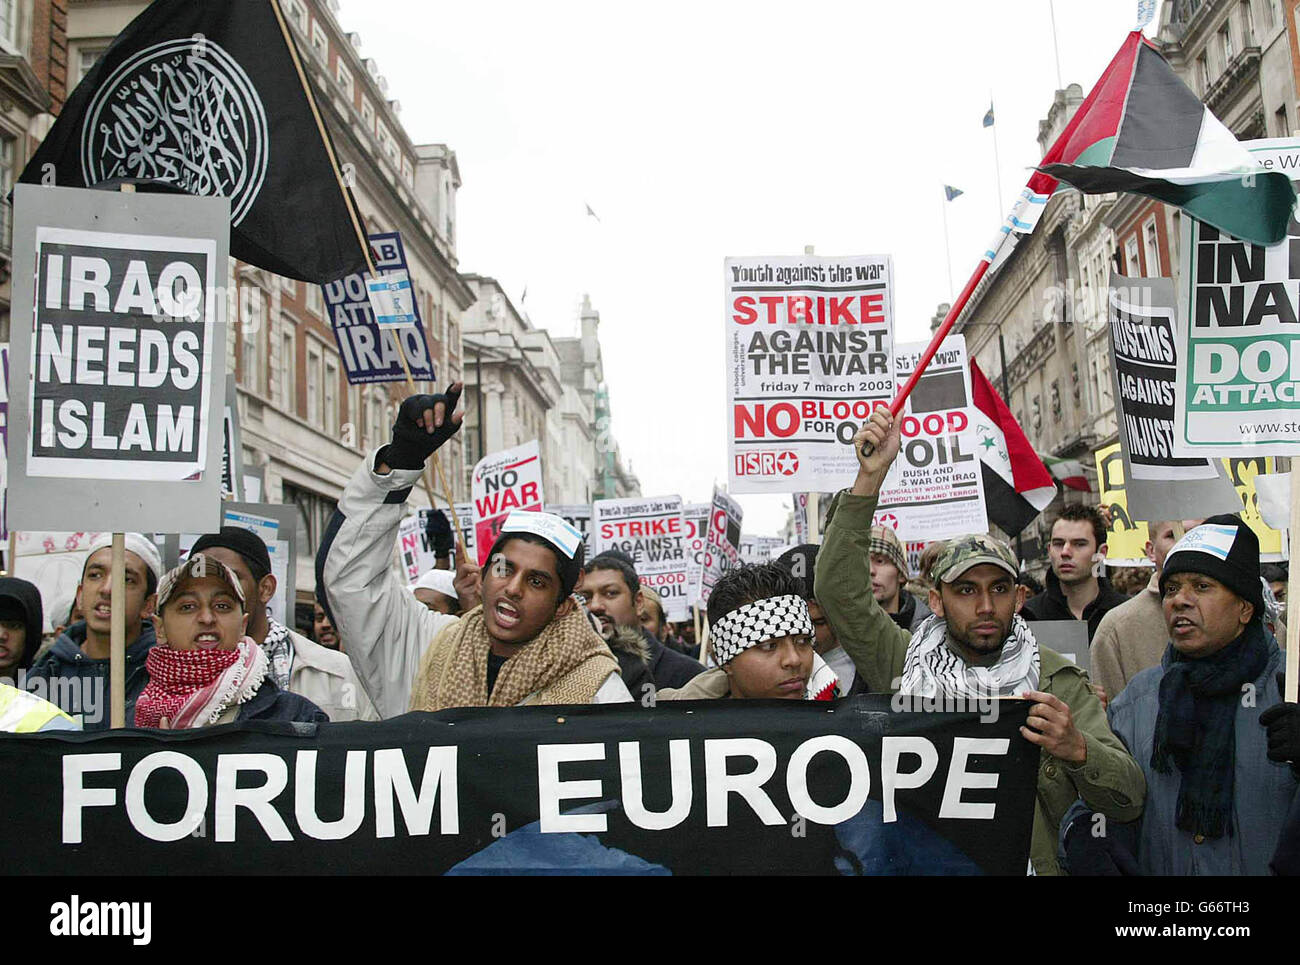 Manifestantes antibélicos durante su marcha en el centro de Londres, pidiendo el fin de cualquier acción militar propuesta contra Irak. Foto de stock